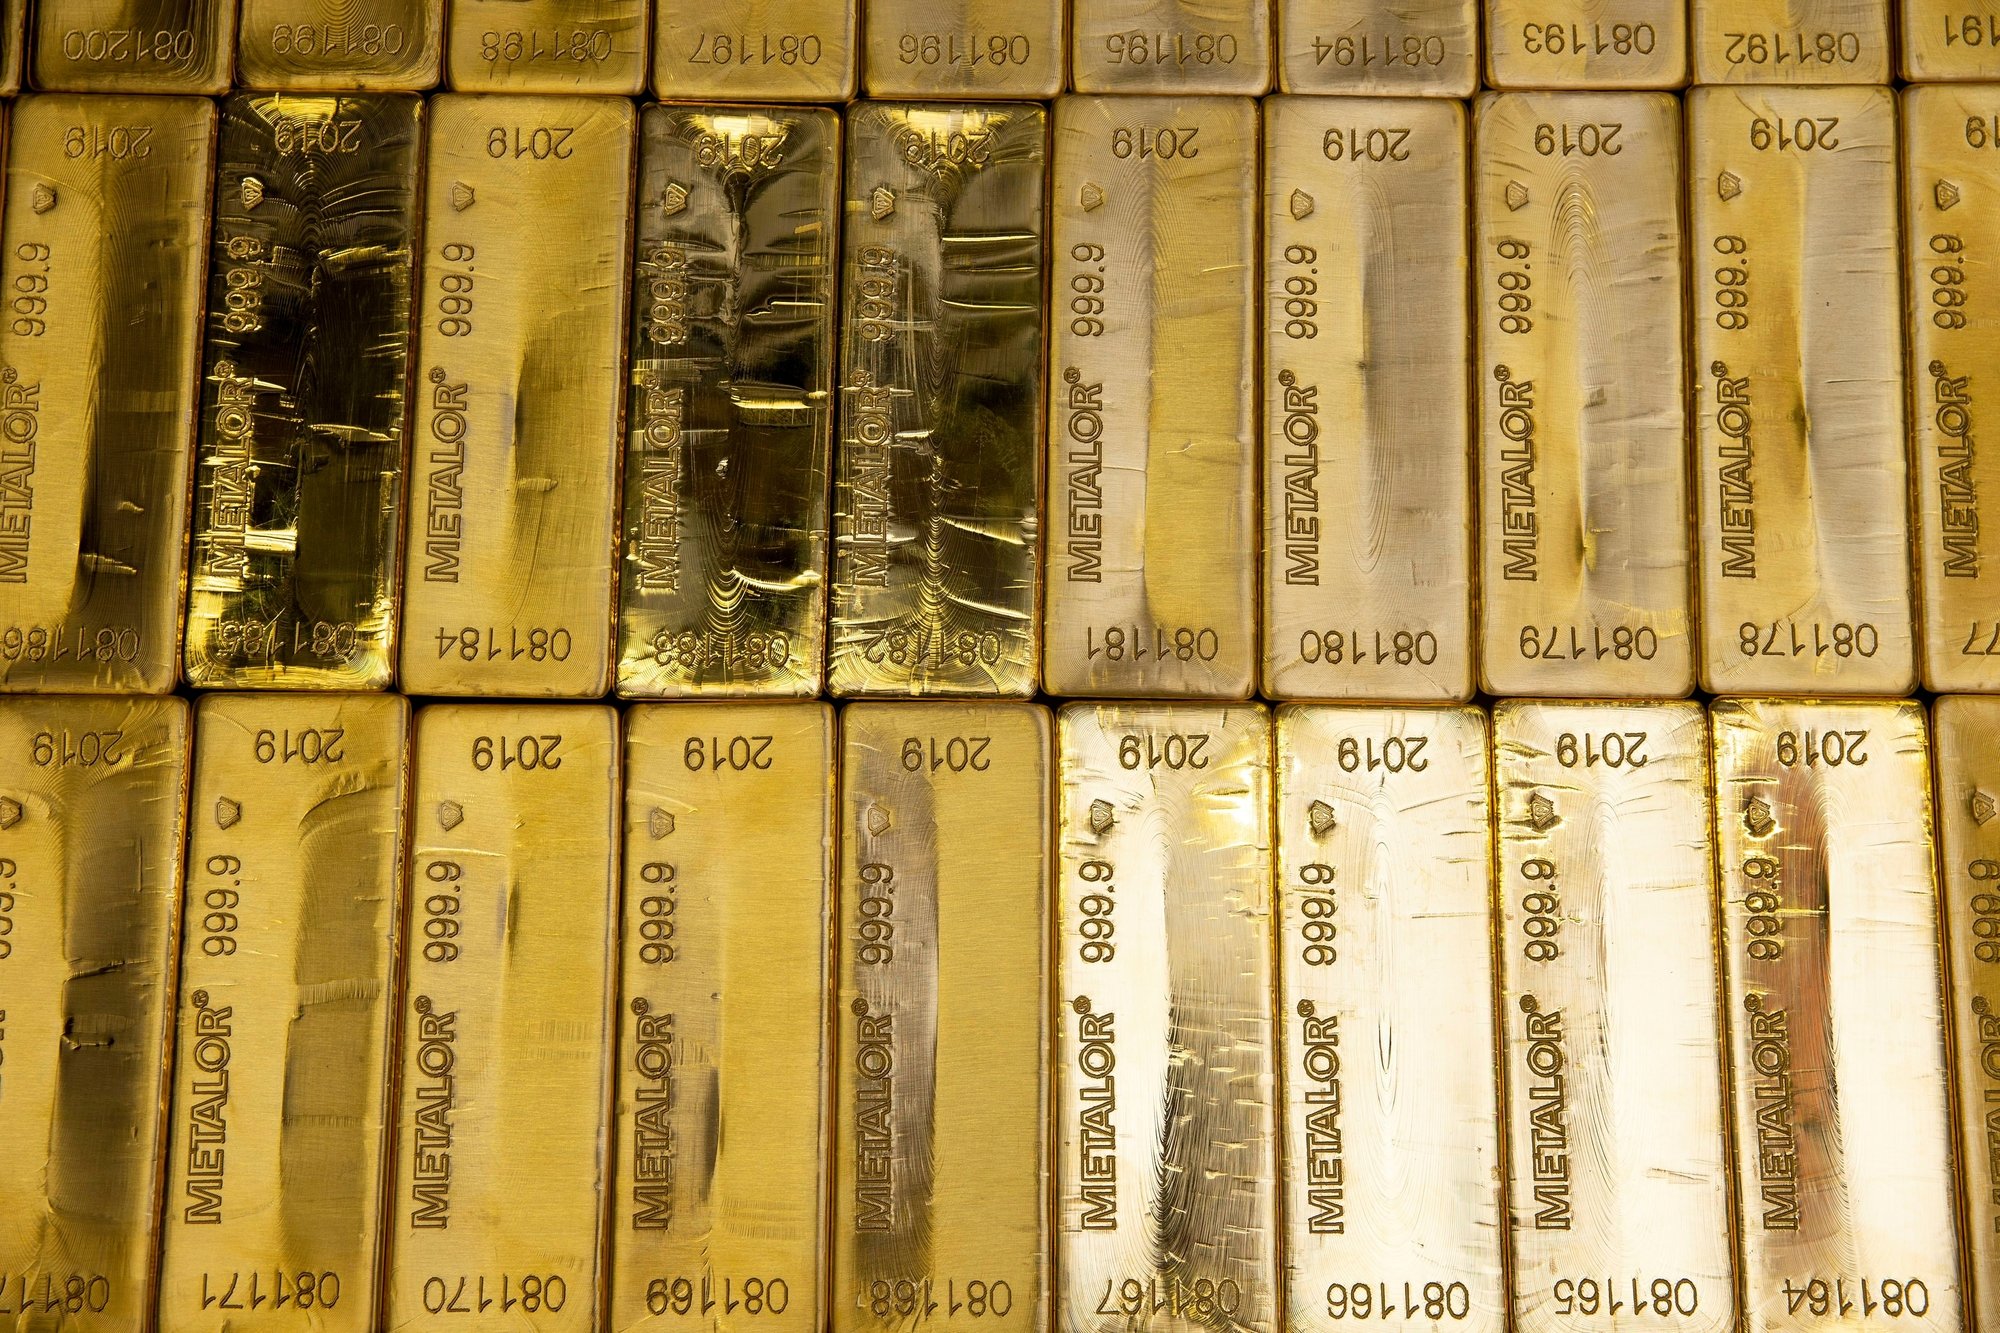 A l'exception d'un lingot, les près de 700 kilos d'or dérobés en 2004 chez Metalor ne sont jamais réapparu.